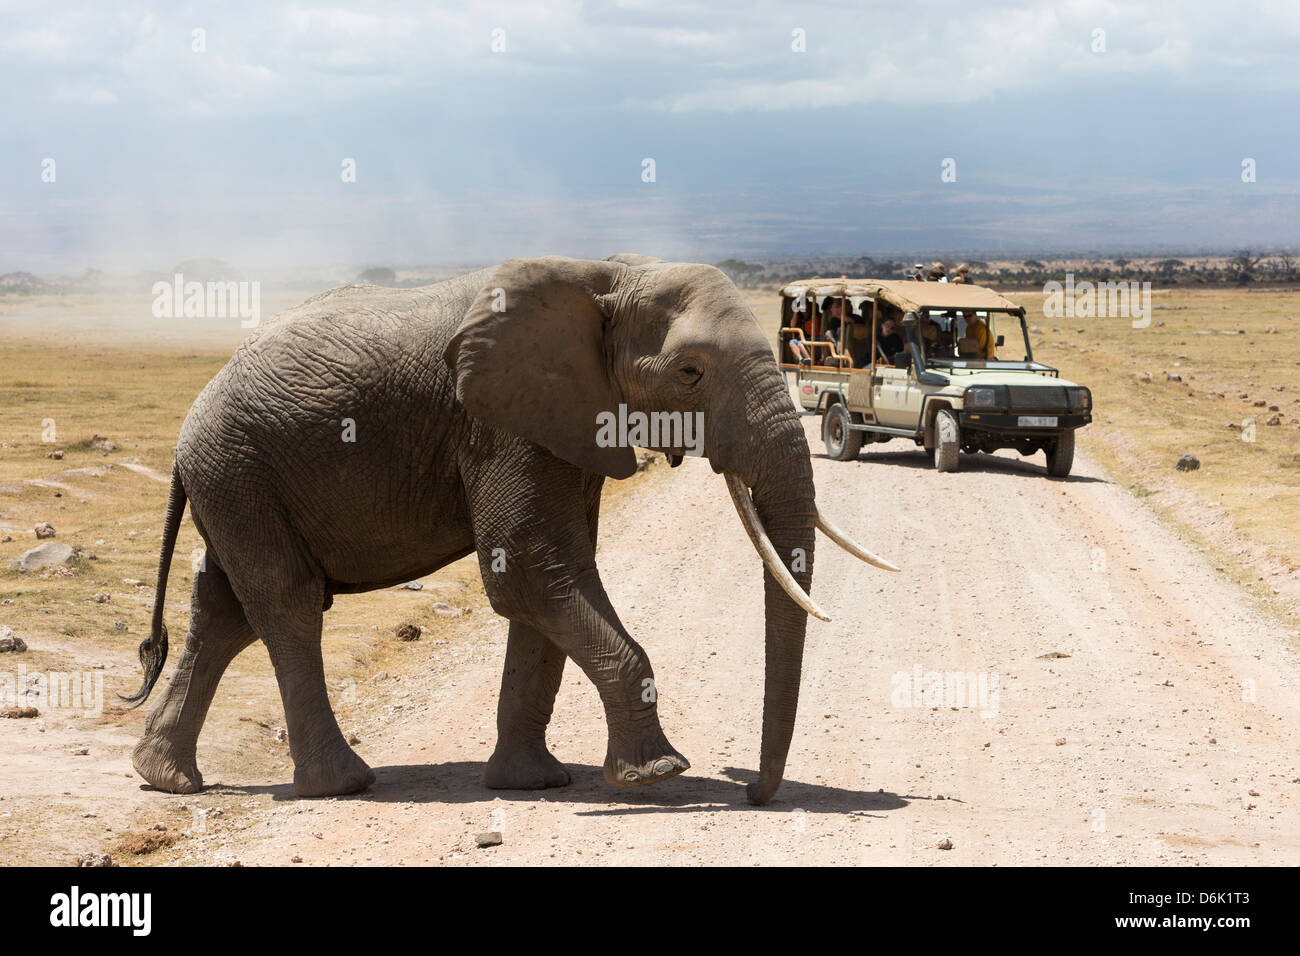 L'éléphant africain (Loxodonta africana) et les touristes, le Parc national Amboseli, Kenya, Afrique de l'Est, l'Afrique Banque D'Images